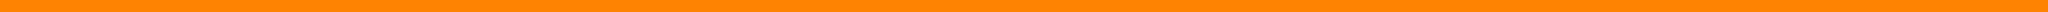 Barre orange